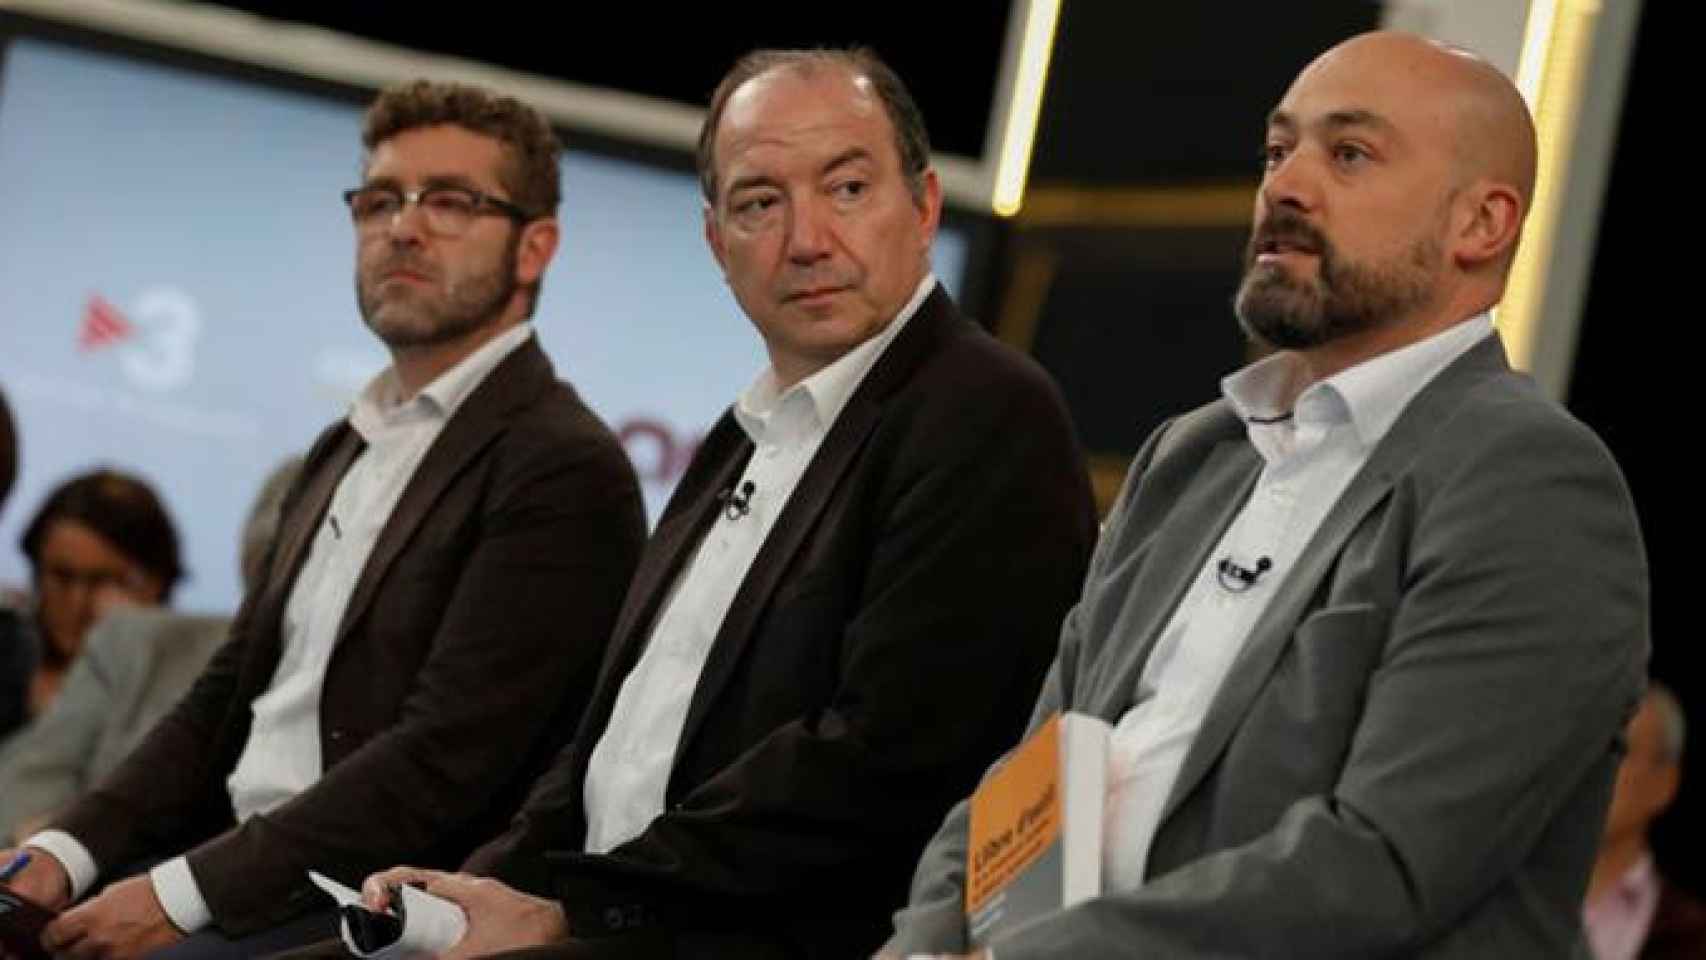 Saul Gordillo (Catalunya Ràdio), Vicent Sanchis (TV3) y Marc Colomer (ACN), de derecha a izquierda, en un programa de la televisión catalana sobre la intervención de los medios públicos / CG